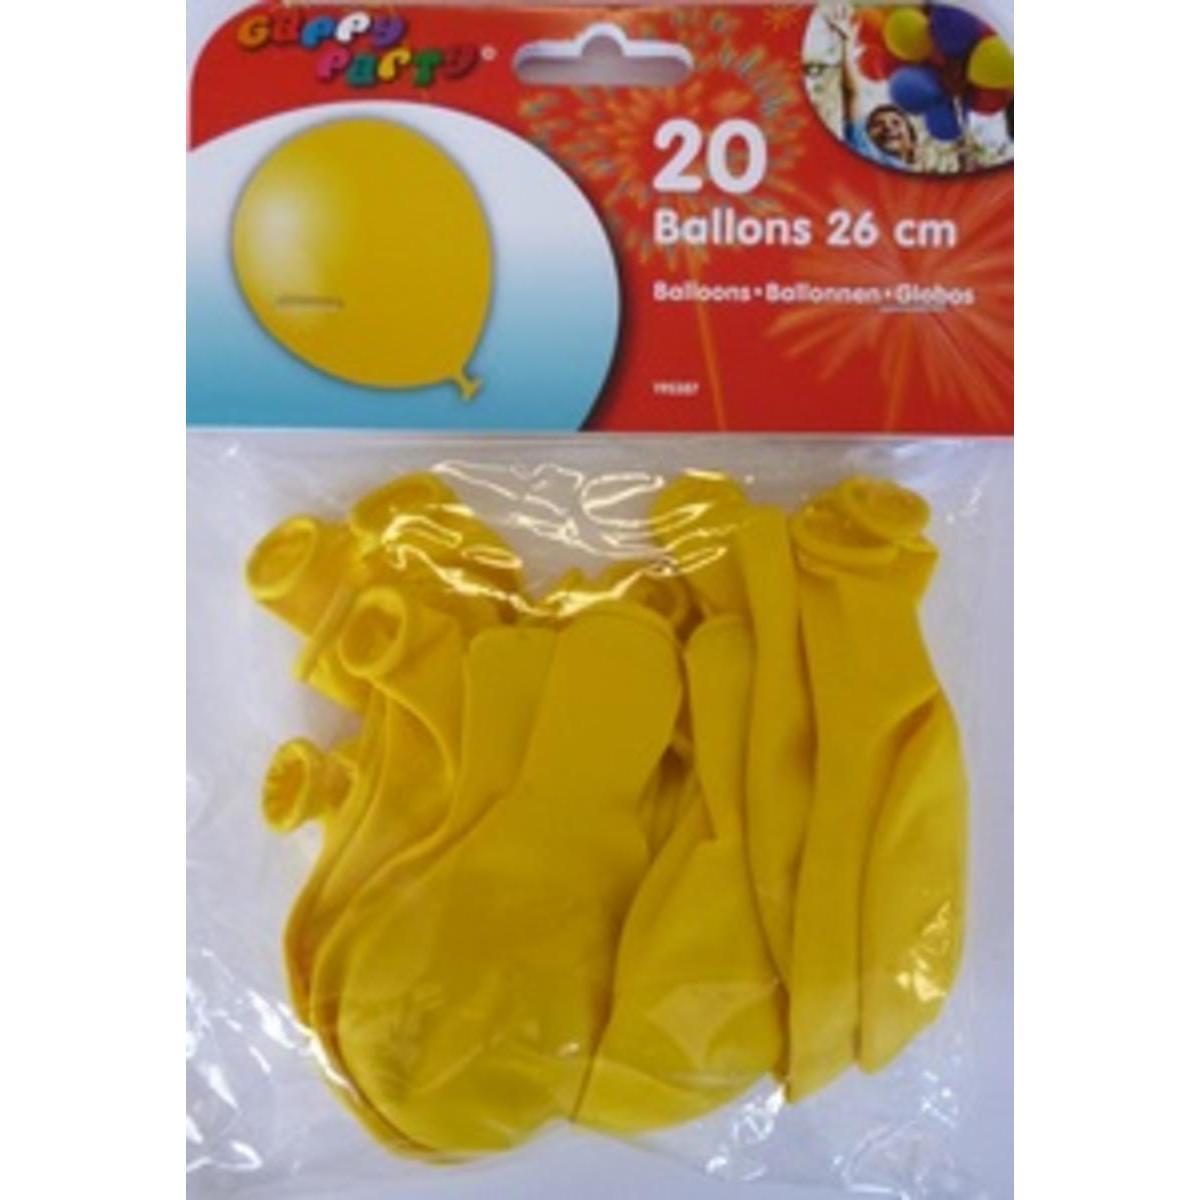 Ballons 25 cm jaunex 20 pièces Gappy party